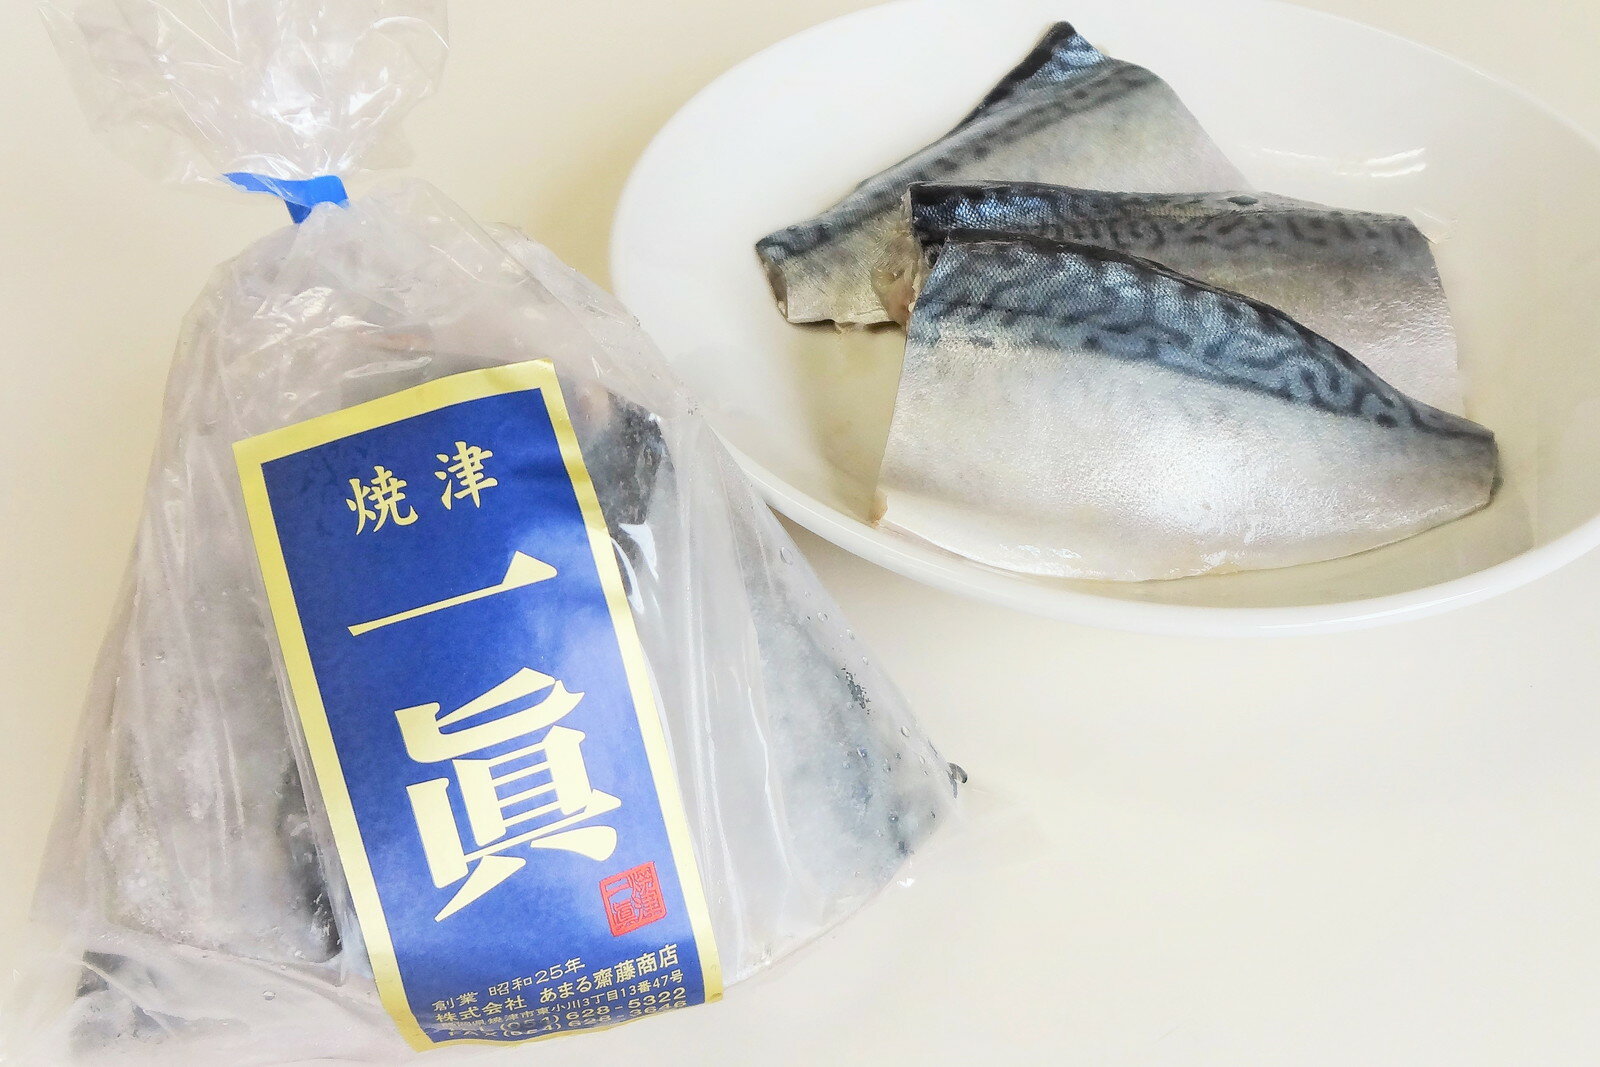 さば 鯖 魚 冷凍 焼津 3切×10個 さば切身 10袋 セット 水産ブランド品 甘塩